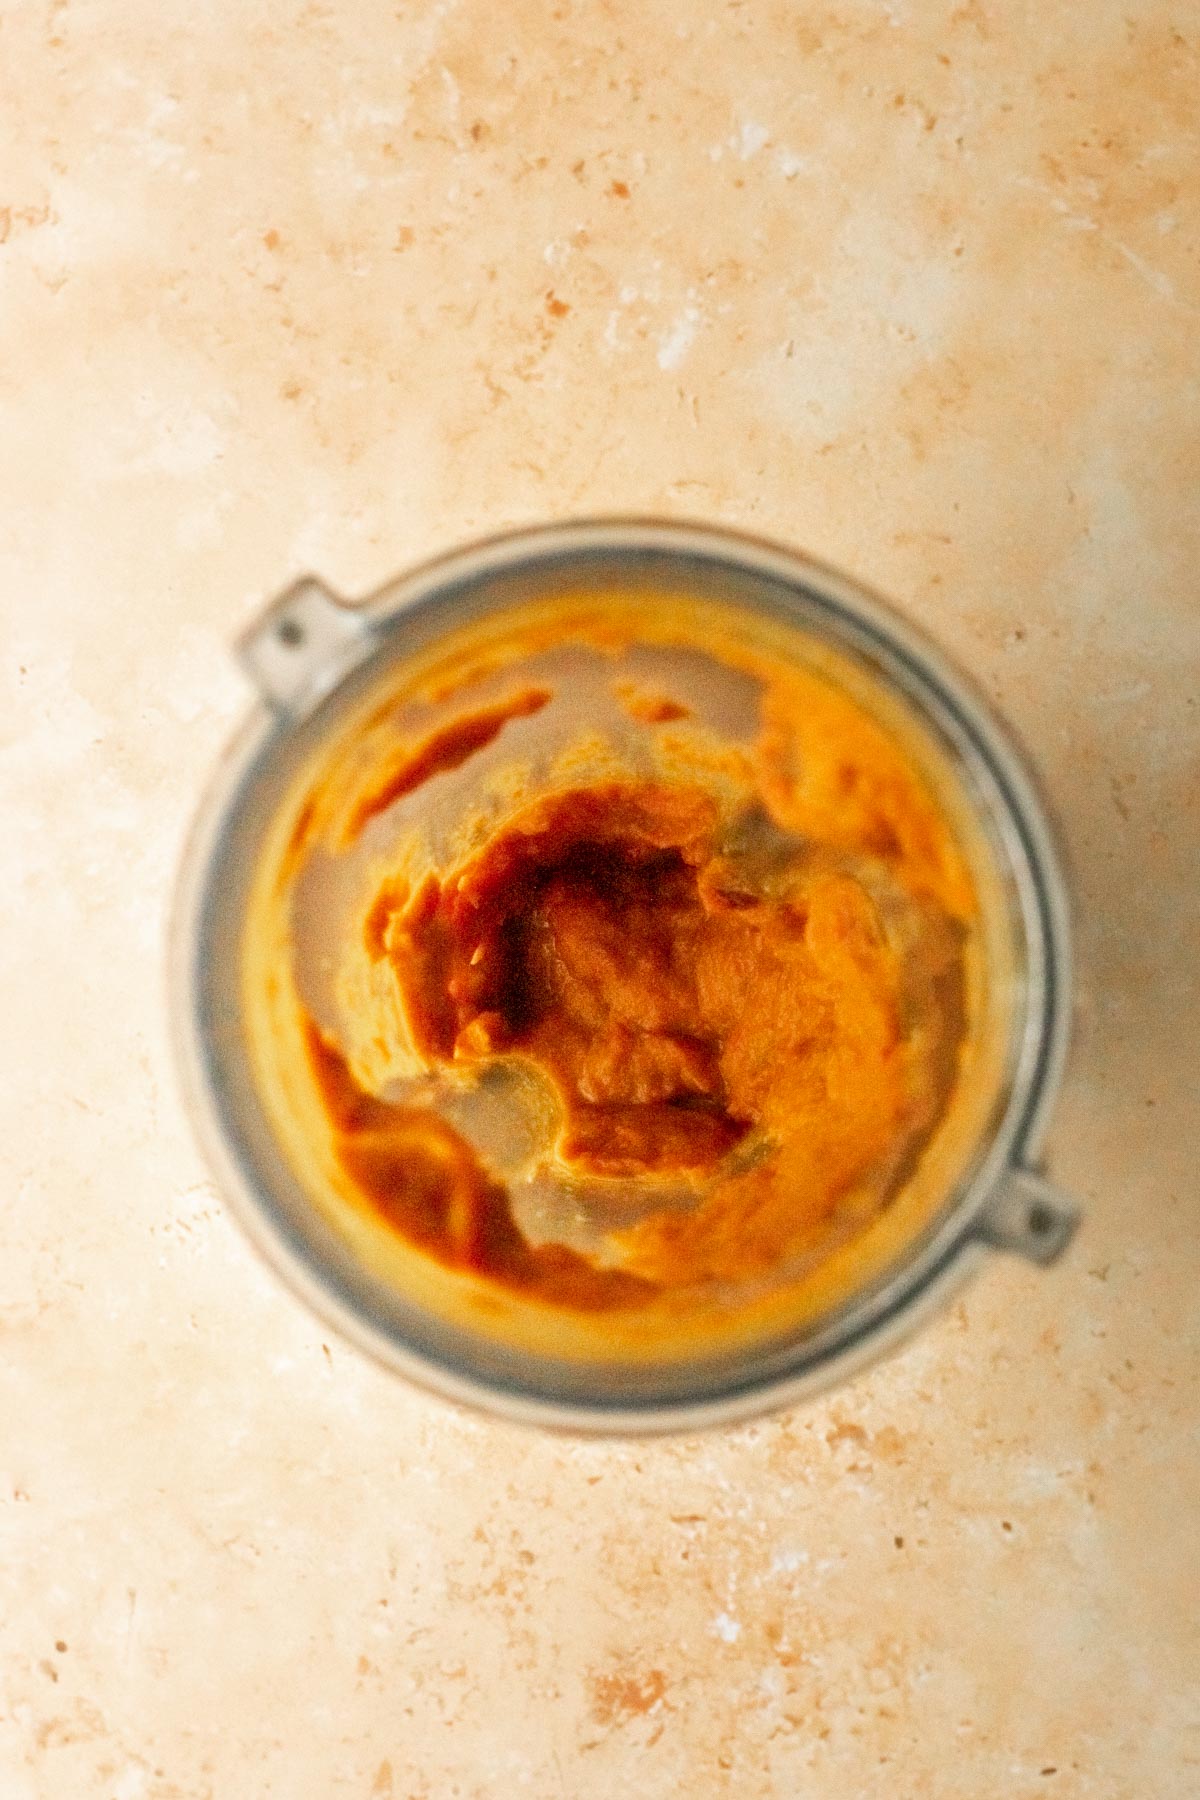 blended curry paste in a blender jar